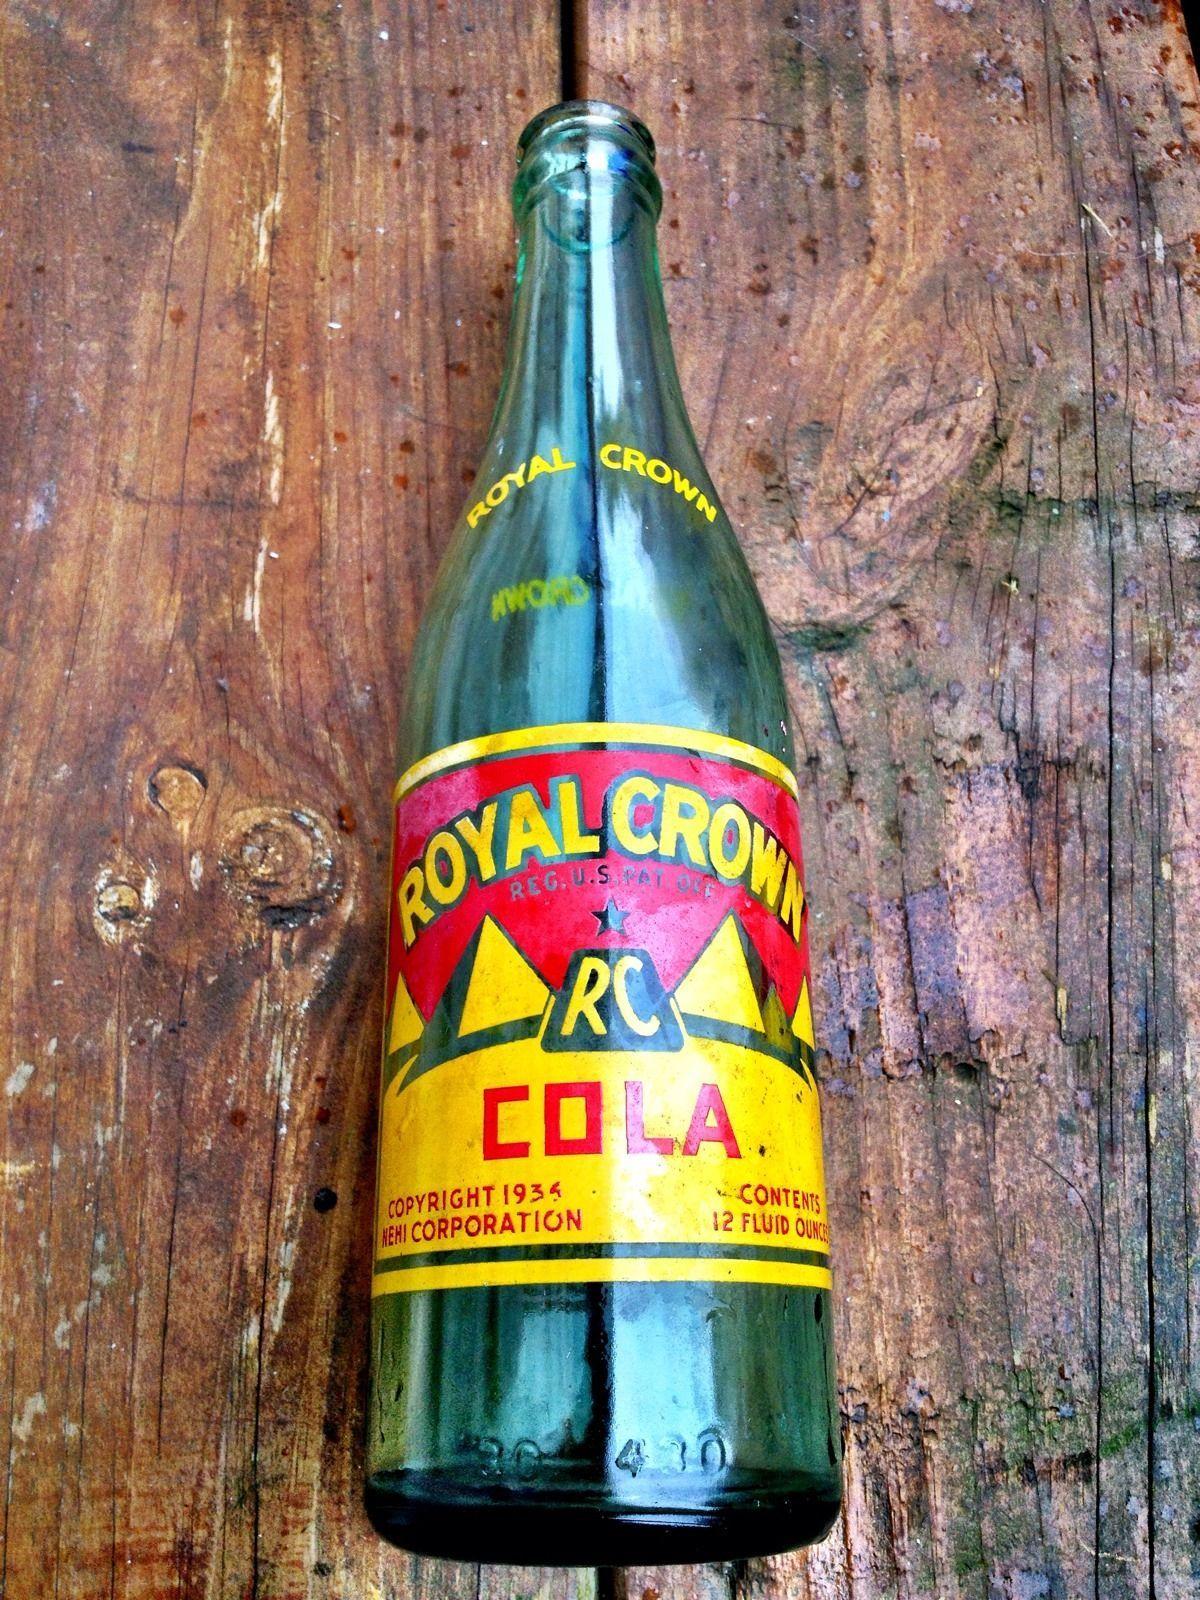 Royal Crown Cola Logo - Royal Crown (RC) Cola logo circa 1934 : conspiracy